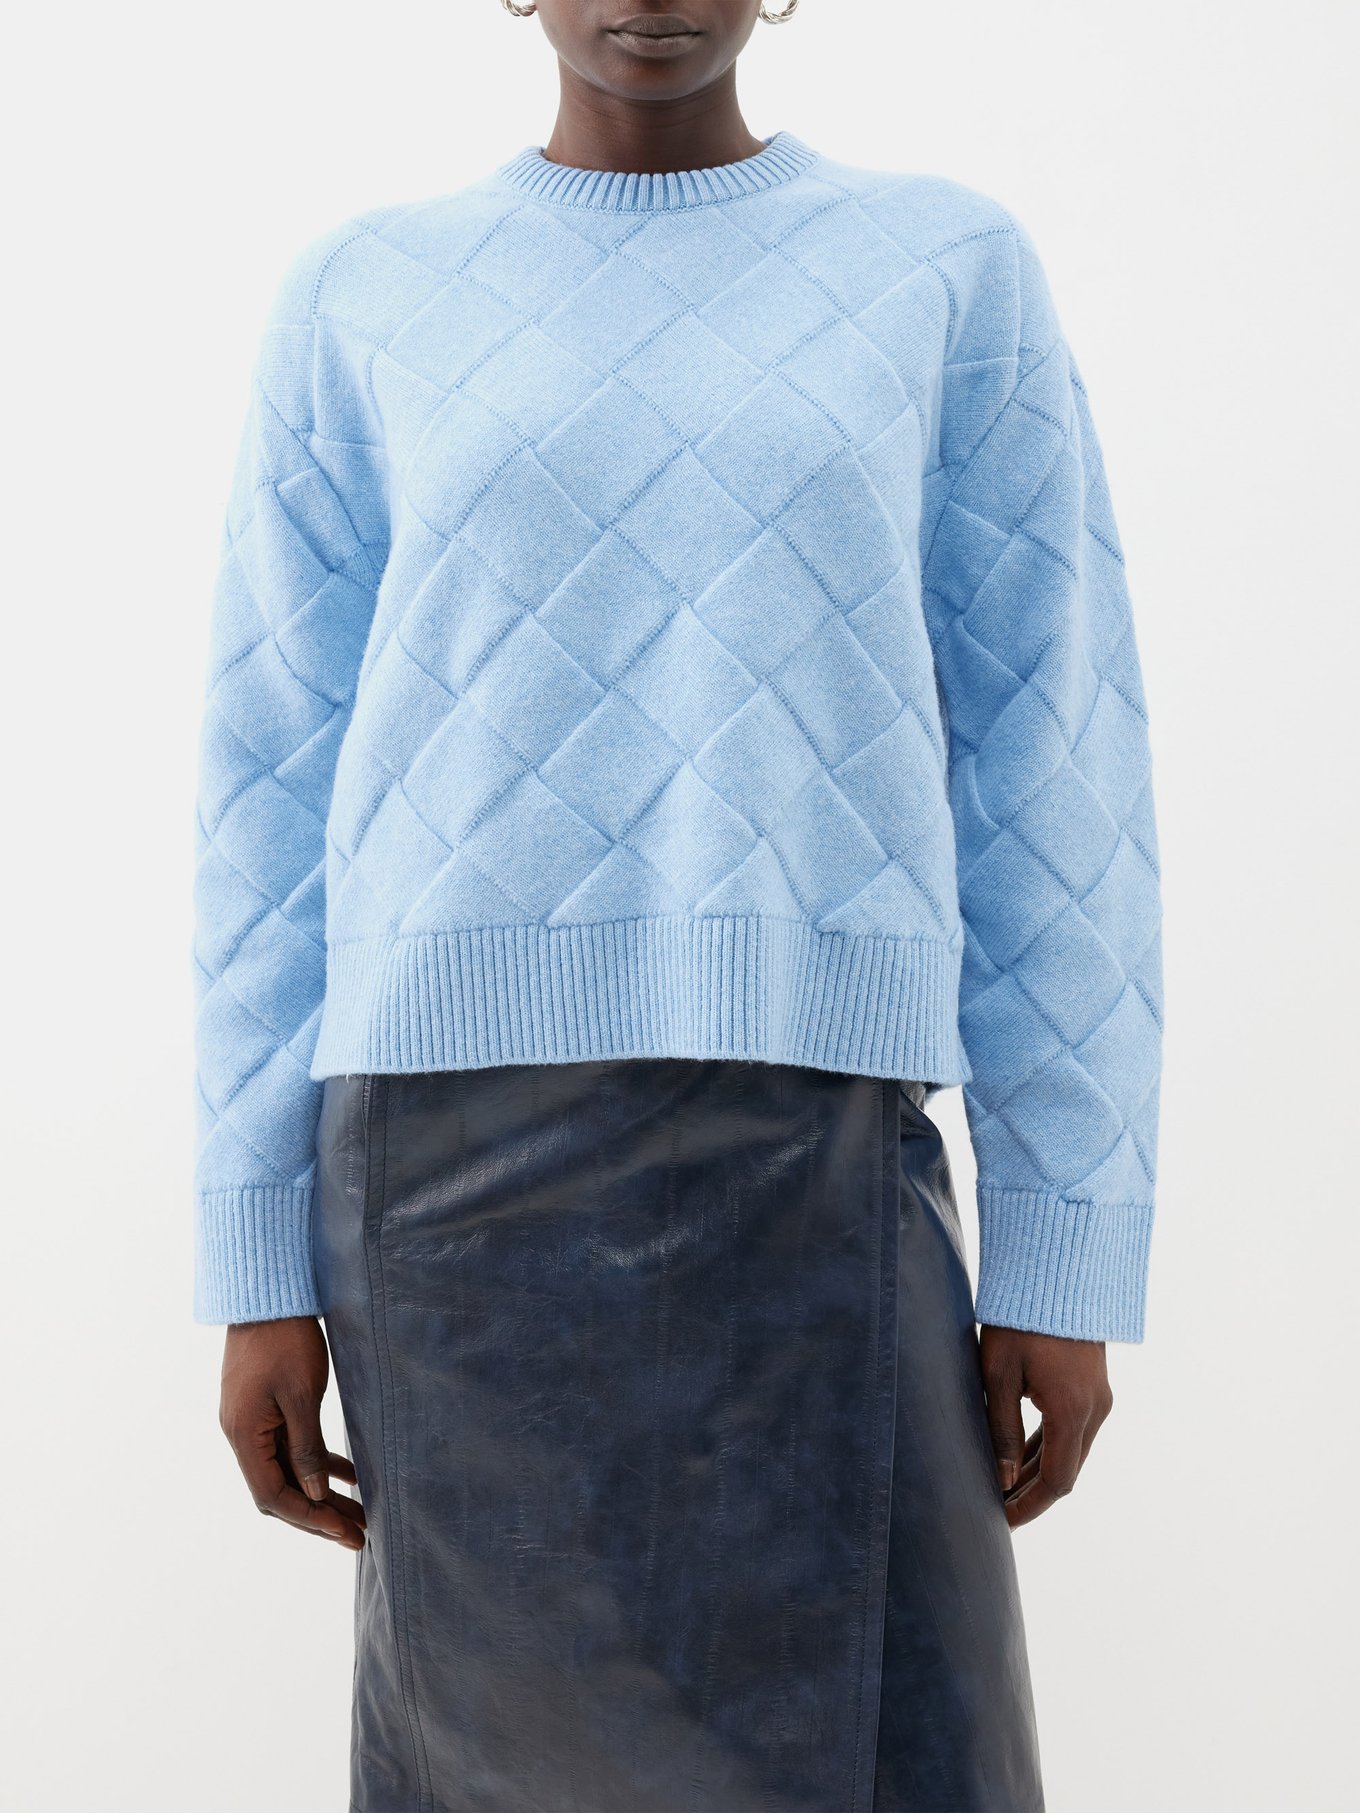 Bottega Veneta Mixed Stitch Zip Front Wool Sweater